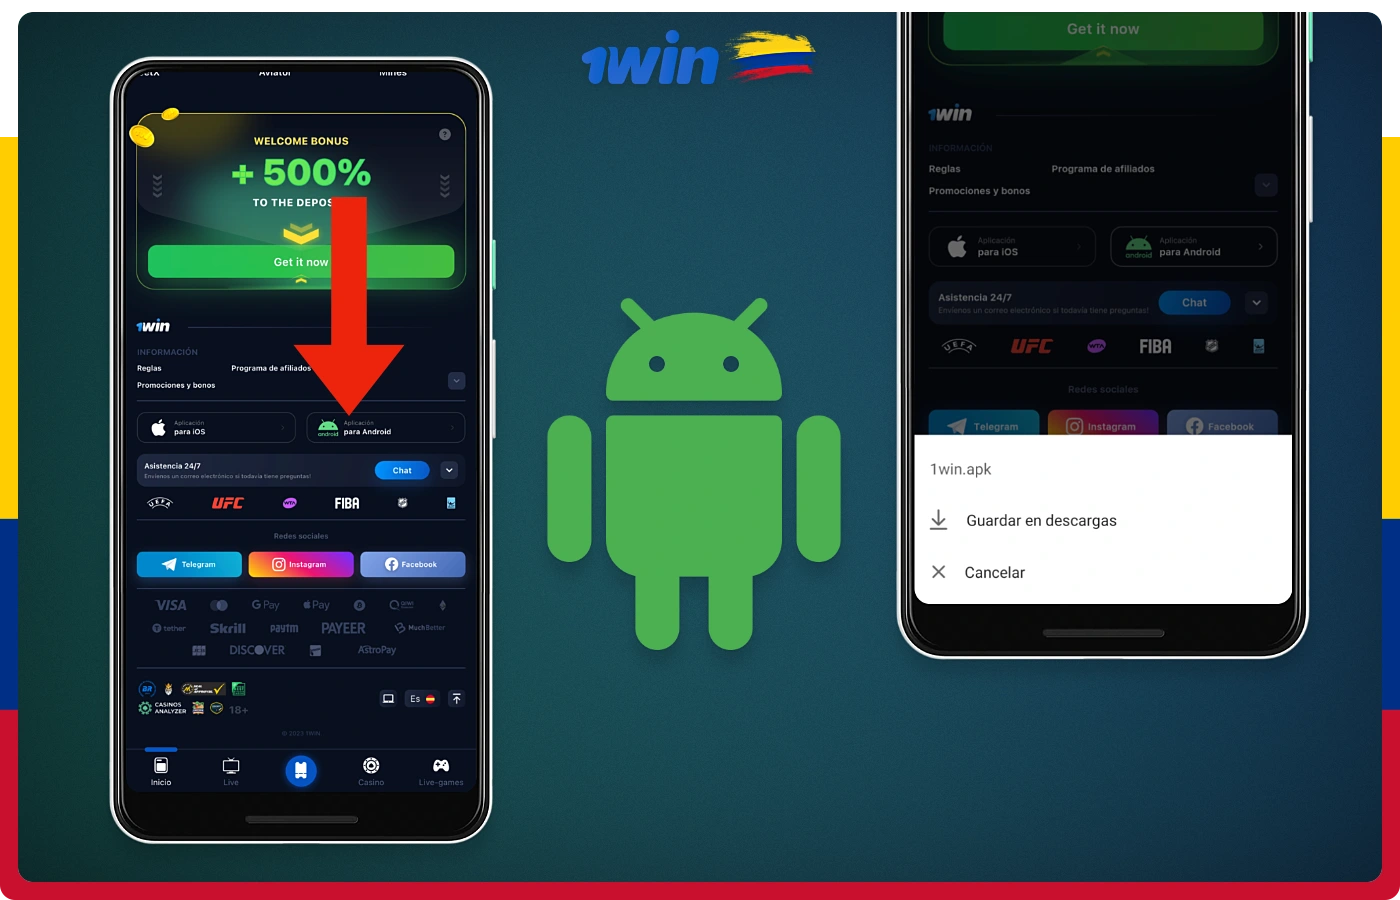 La aplicación móvil de 1win para Android puede ser descargada por los usuarios colombianos desde la web oficial